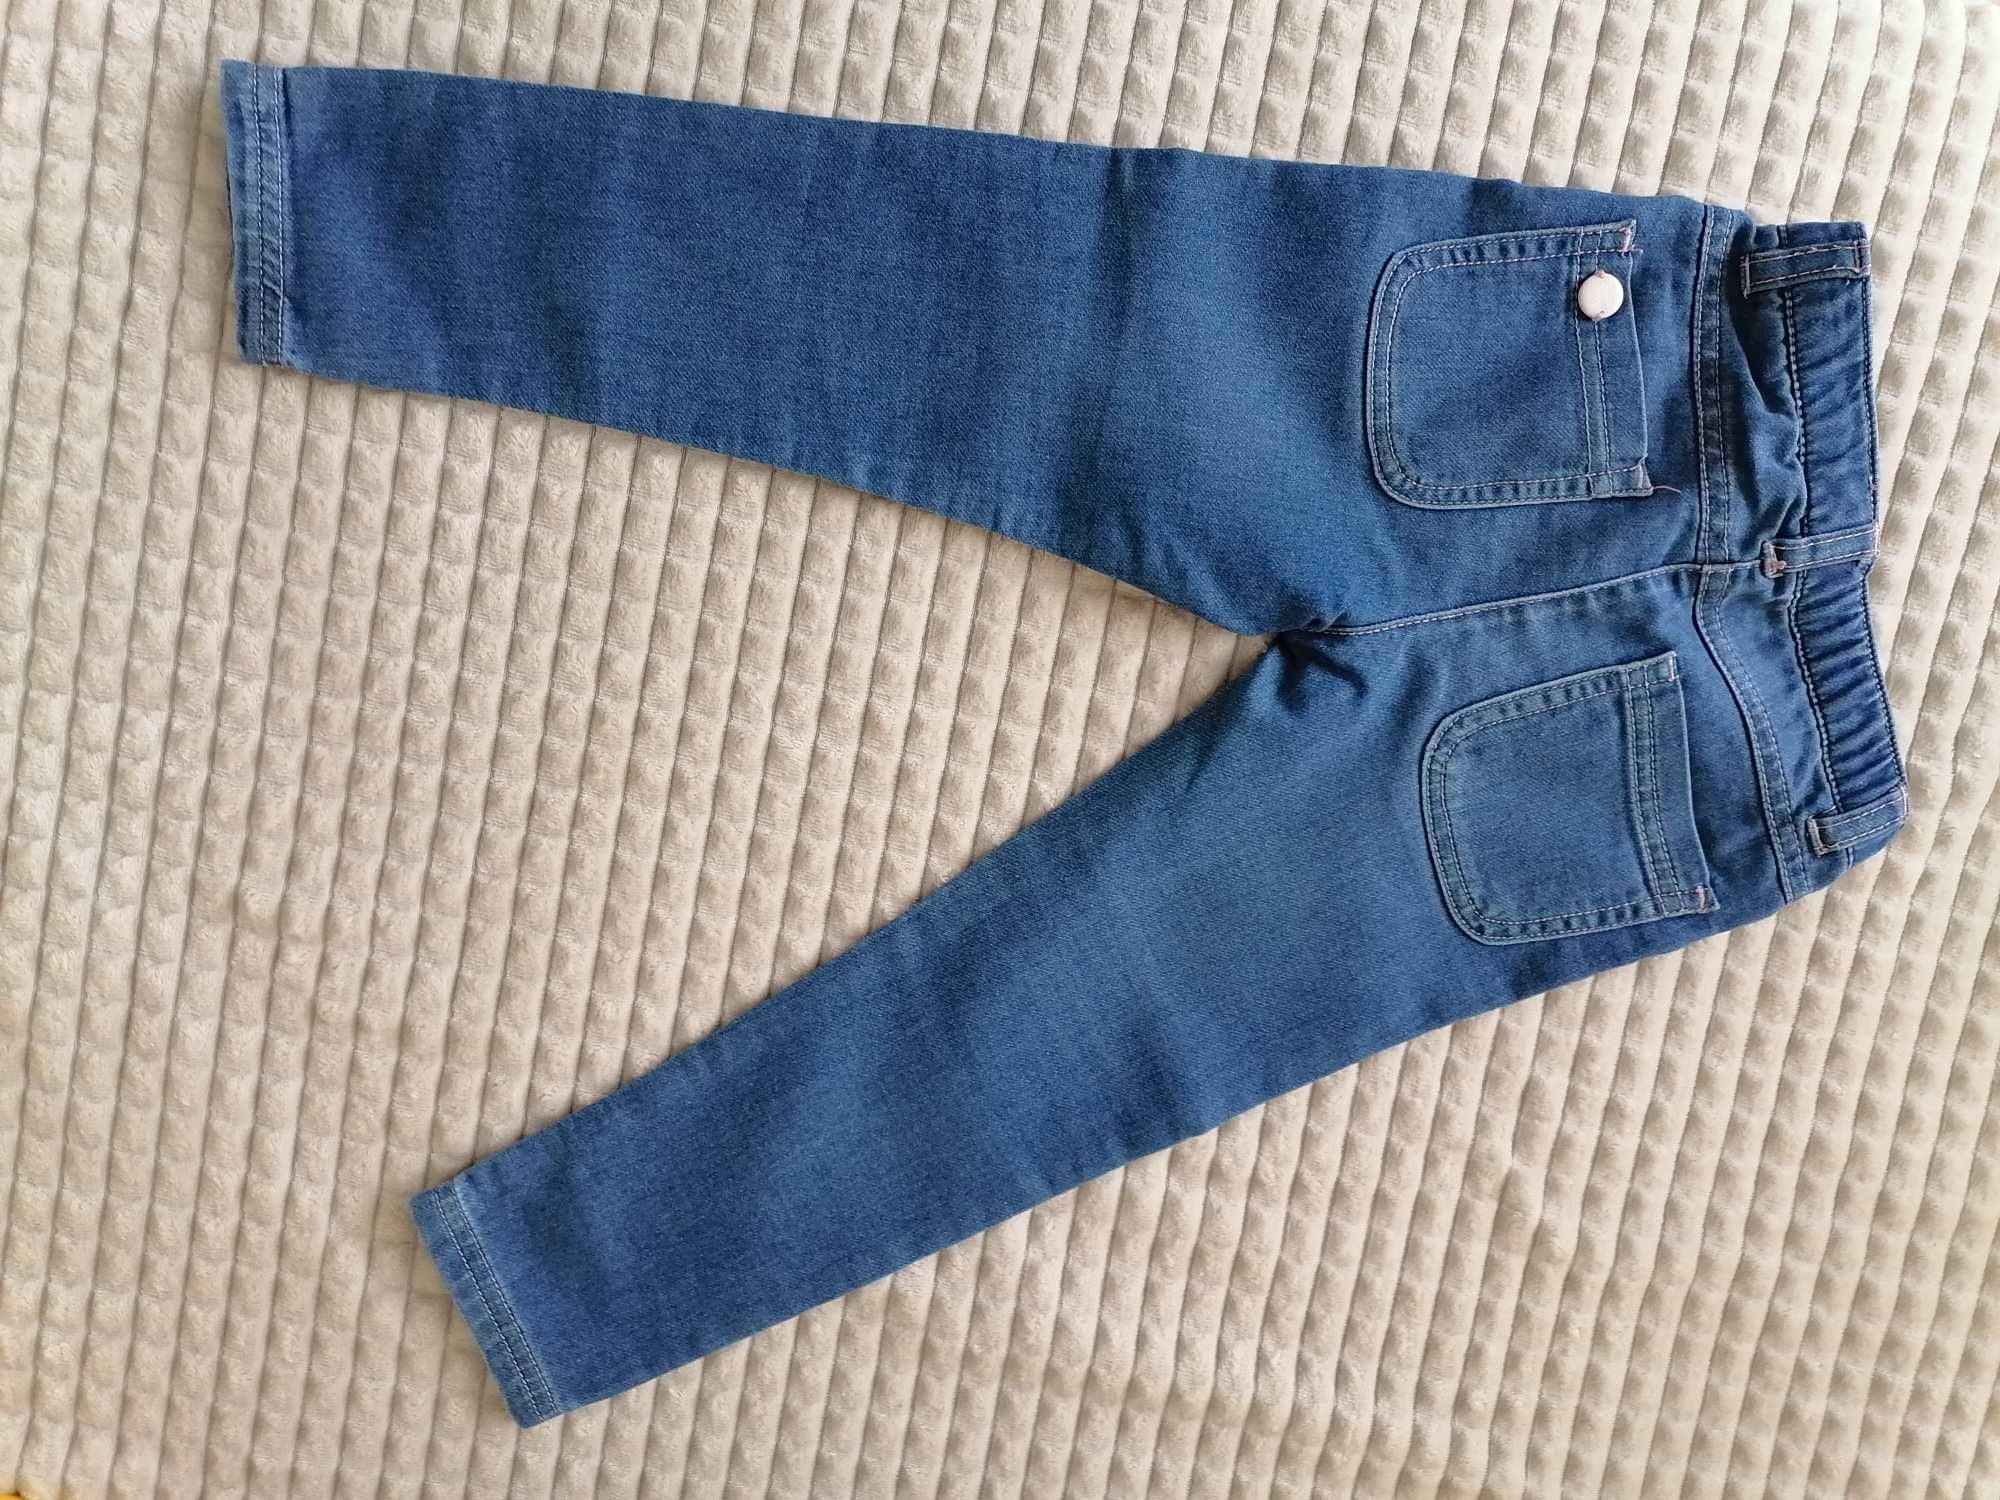 Super spodnie jeansowe coccordillo dla Małej Miss, miękkie,wygodne.